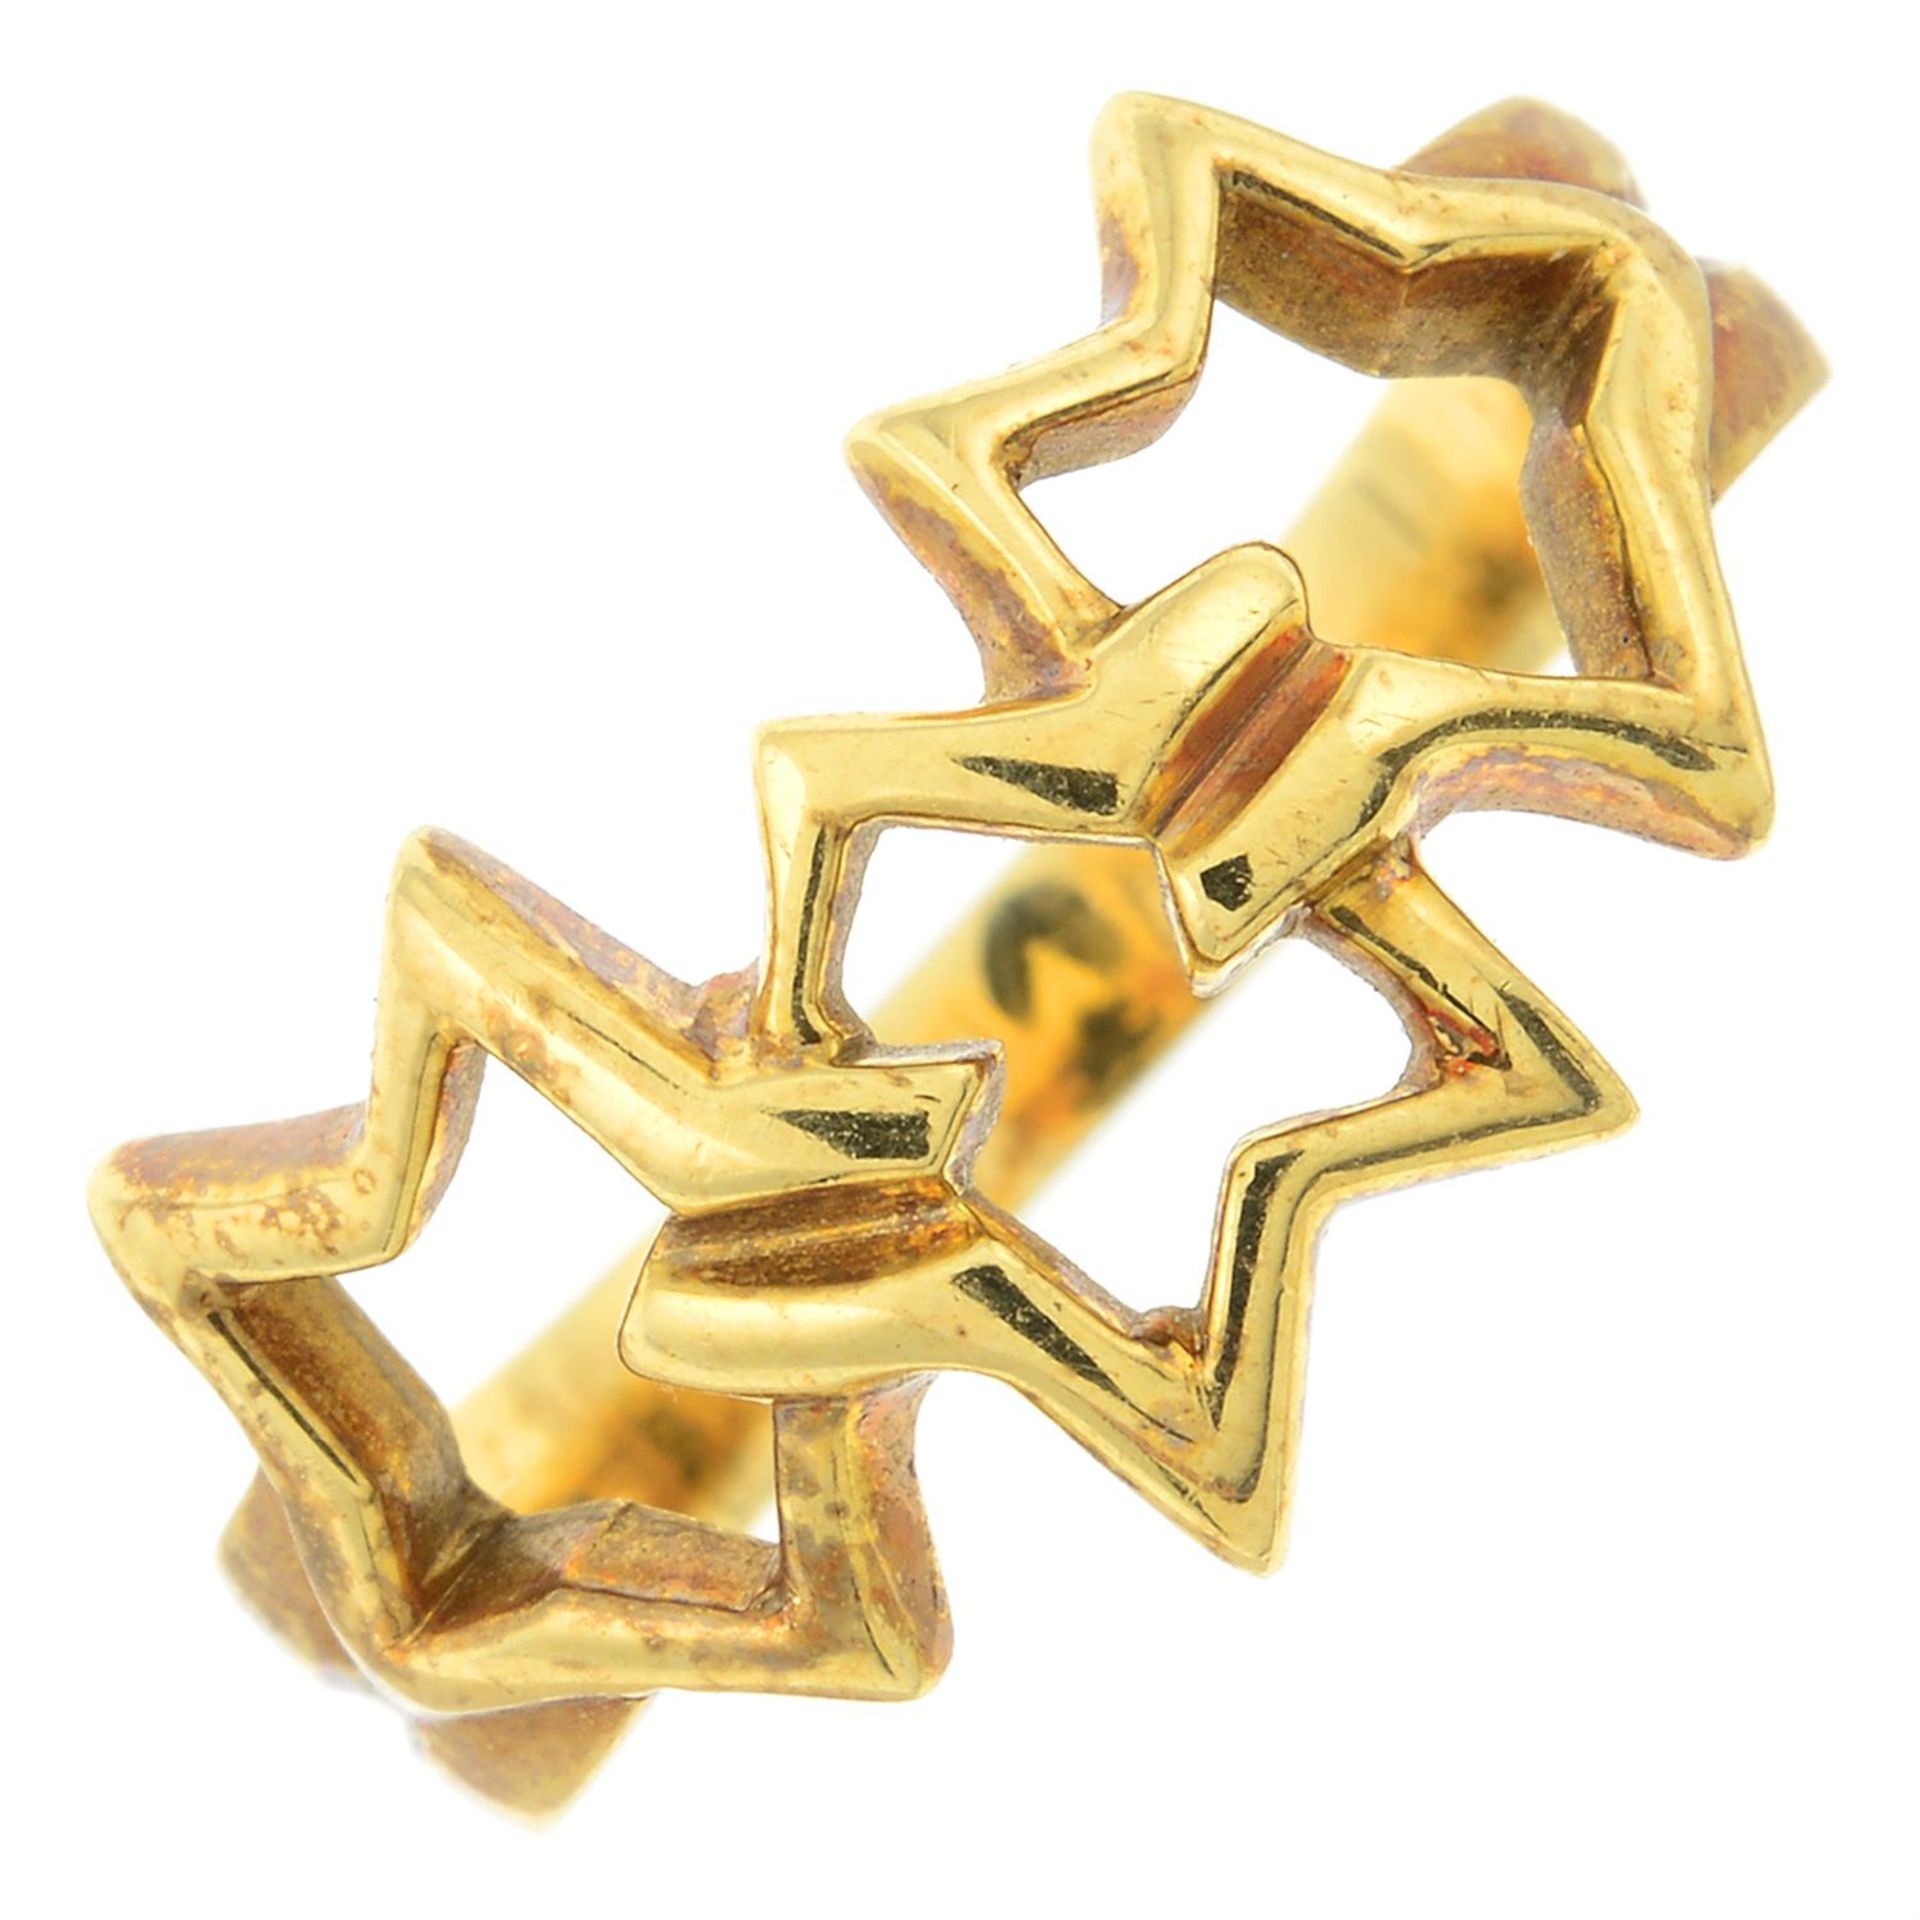 An interlocking star ring, by Tiffany & Co.